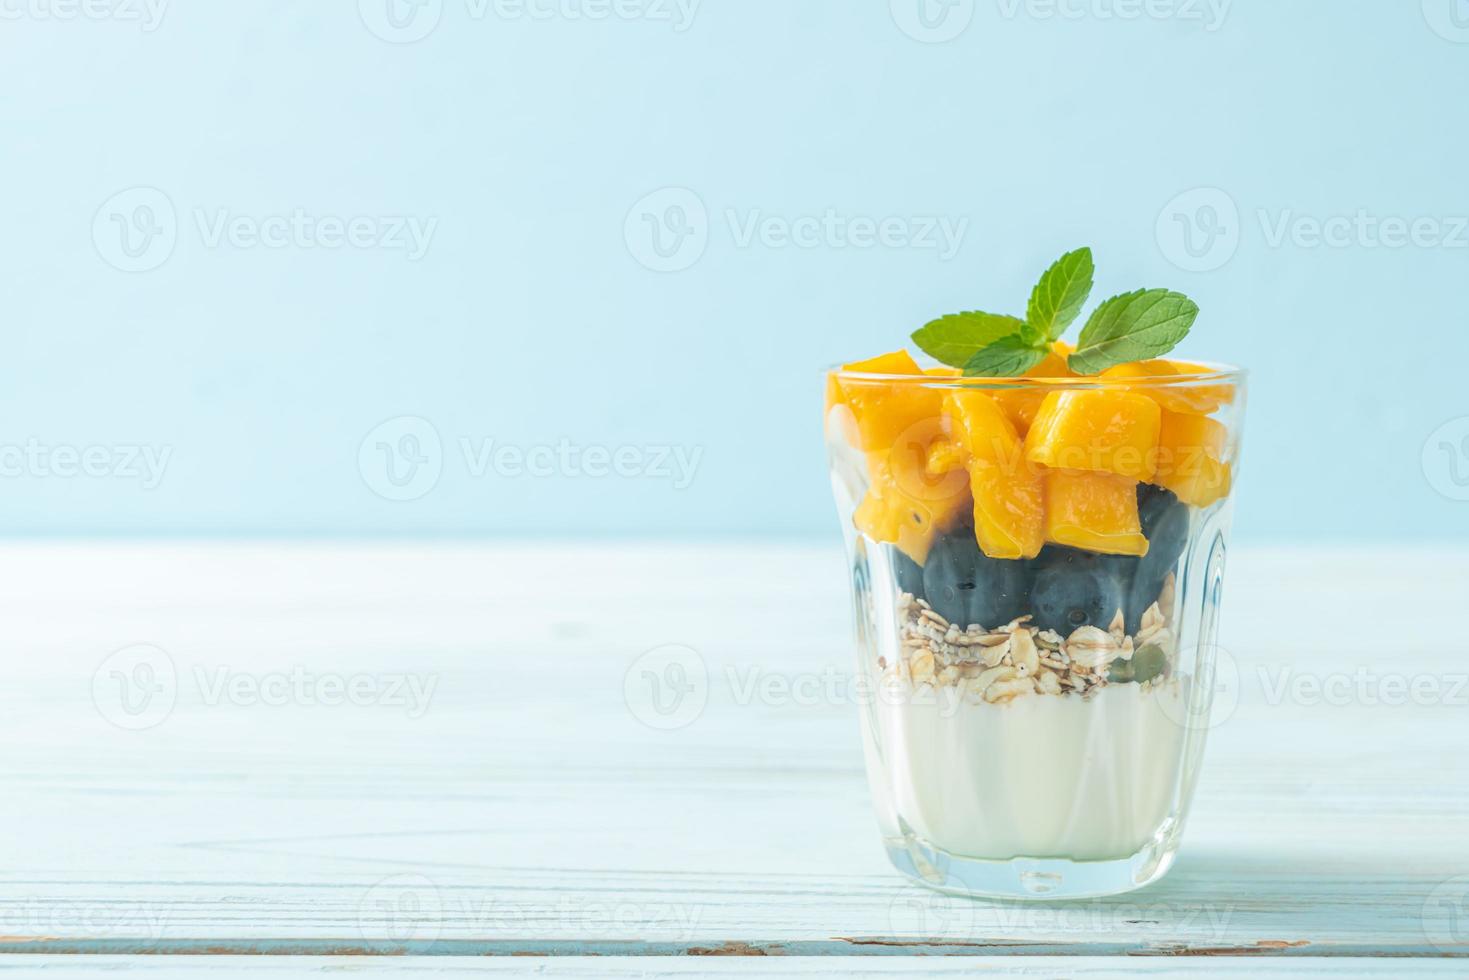 manga fresca caseira e mirtilo fresco com iogurte e granola - estilo de comida saudável foto